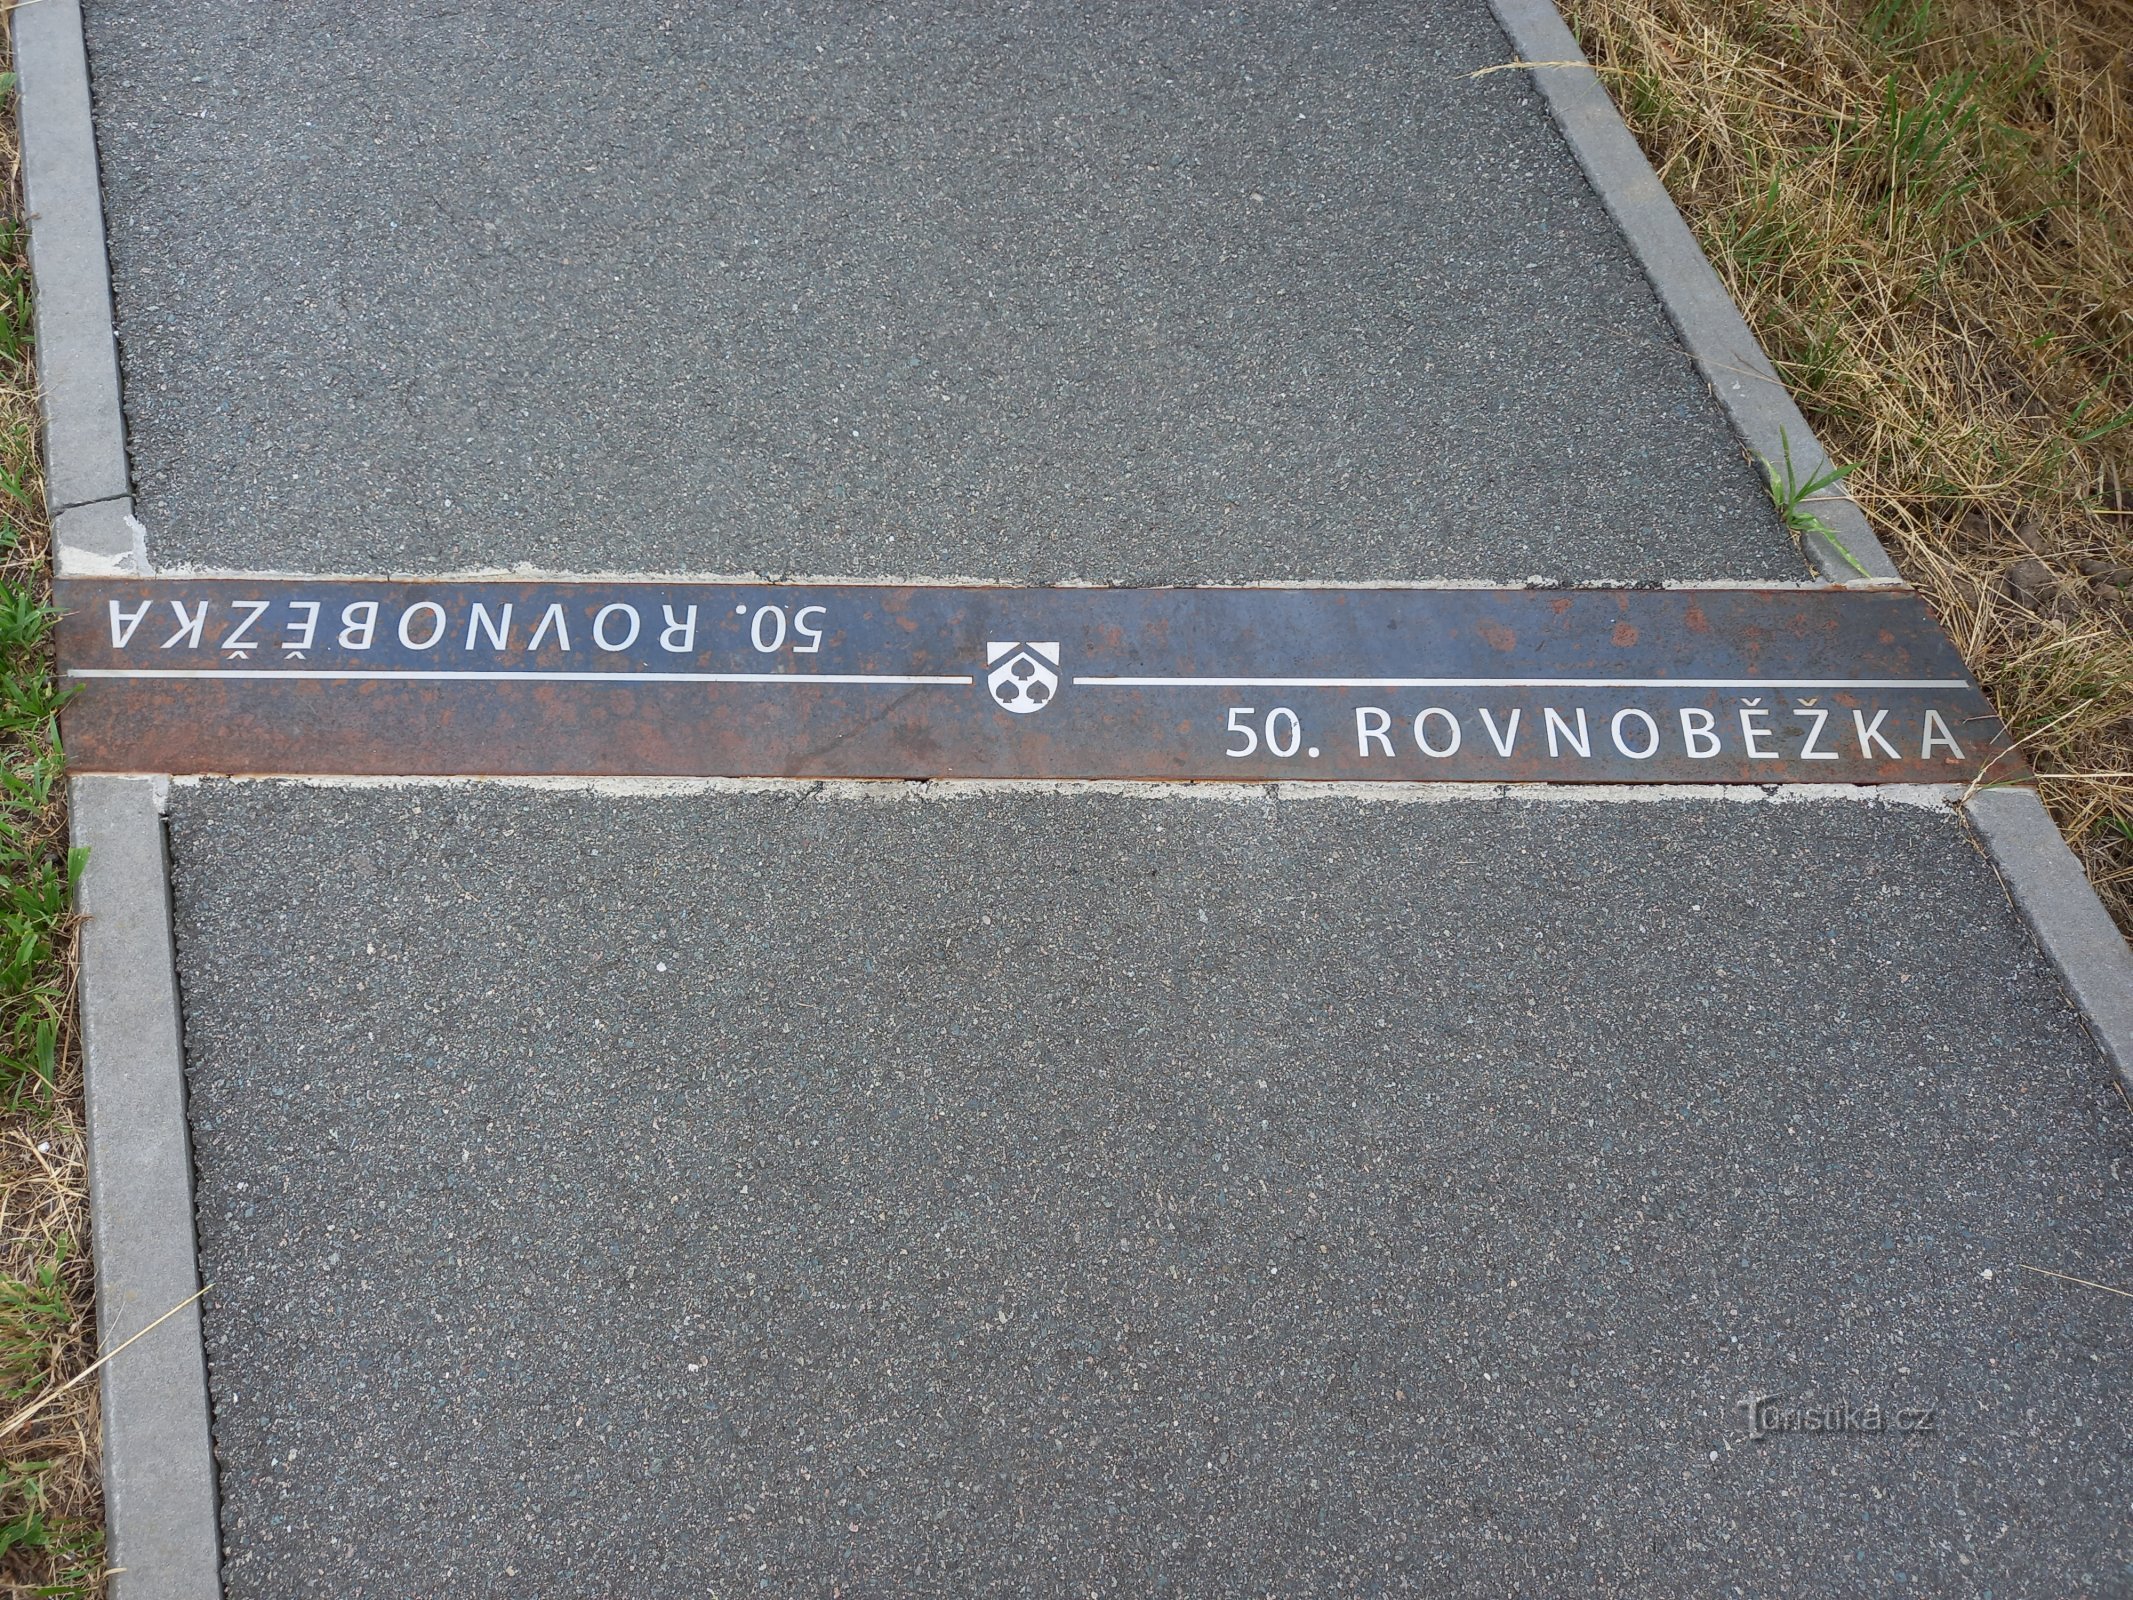 在 Ostřešany 附近标出 50 度纬线